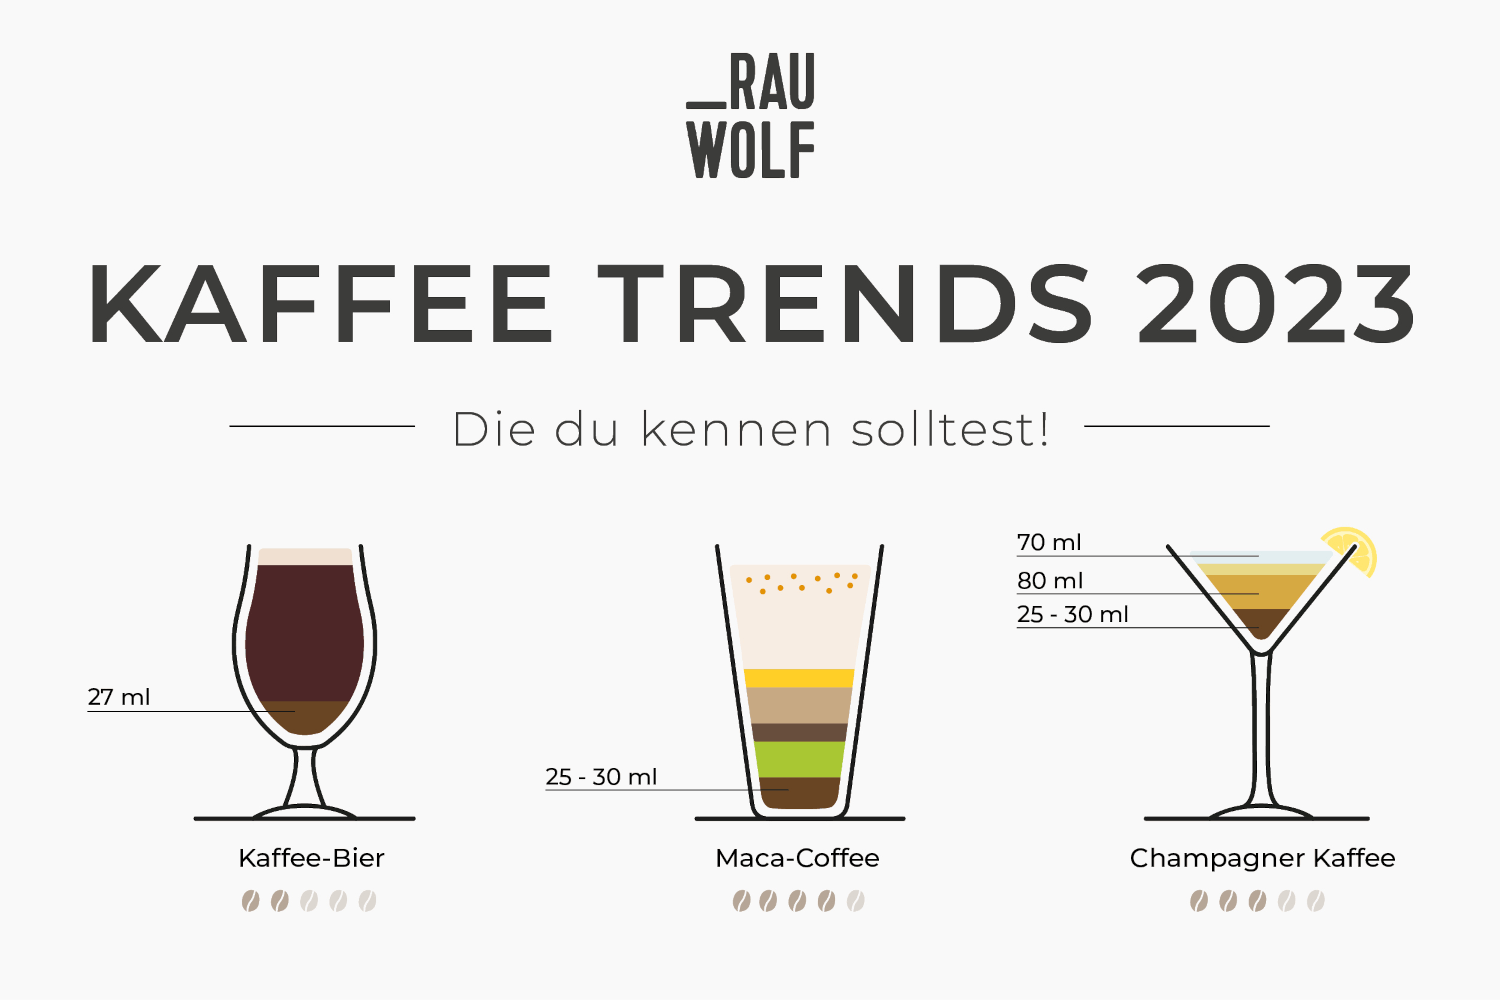 KaffeeTrends 2023 Infografik & Rezepte RAUWOLF